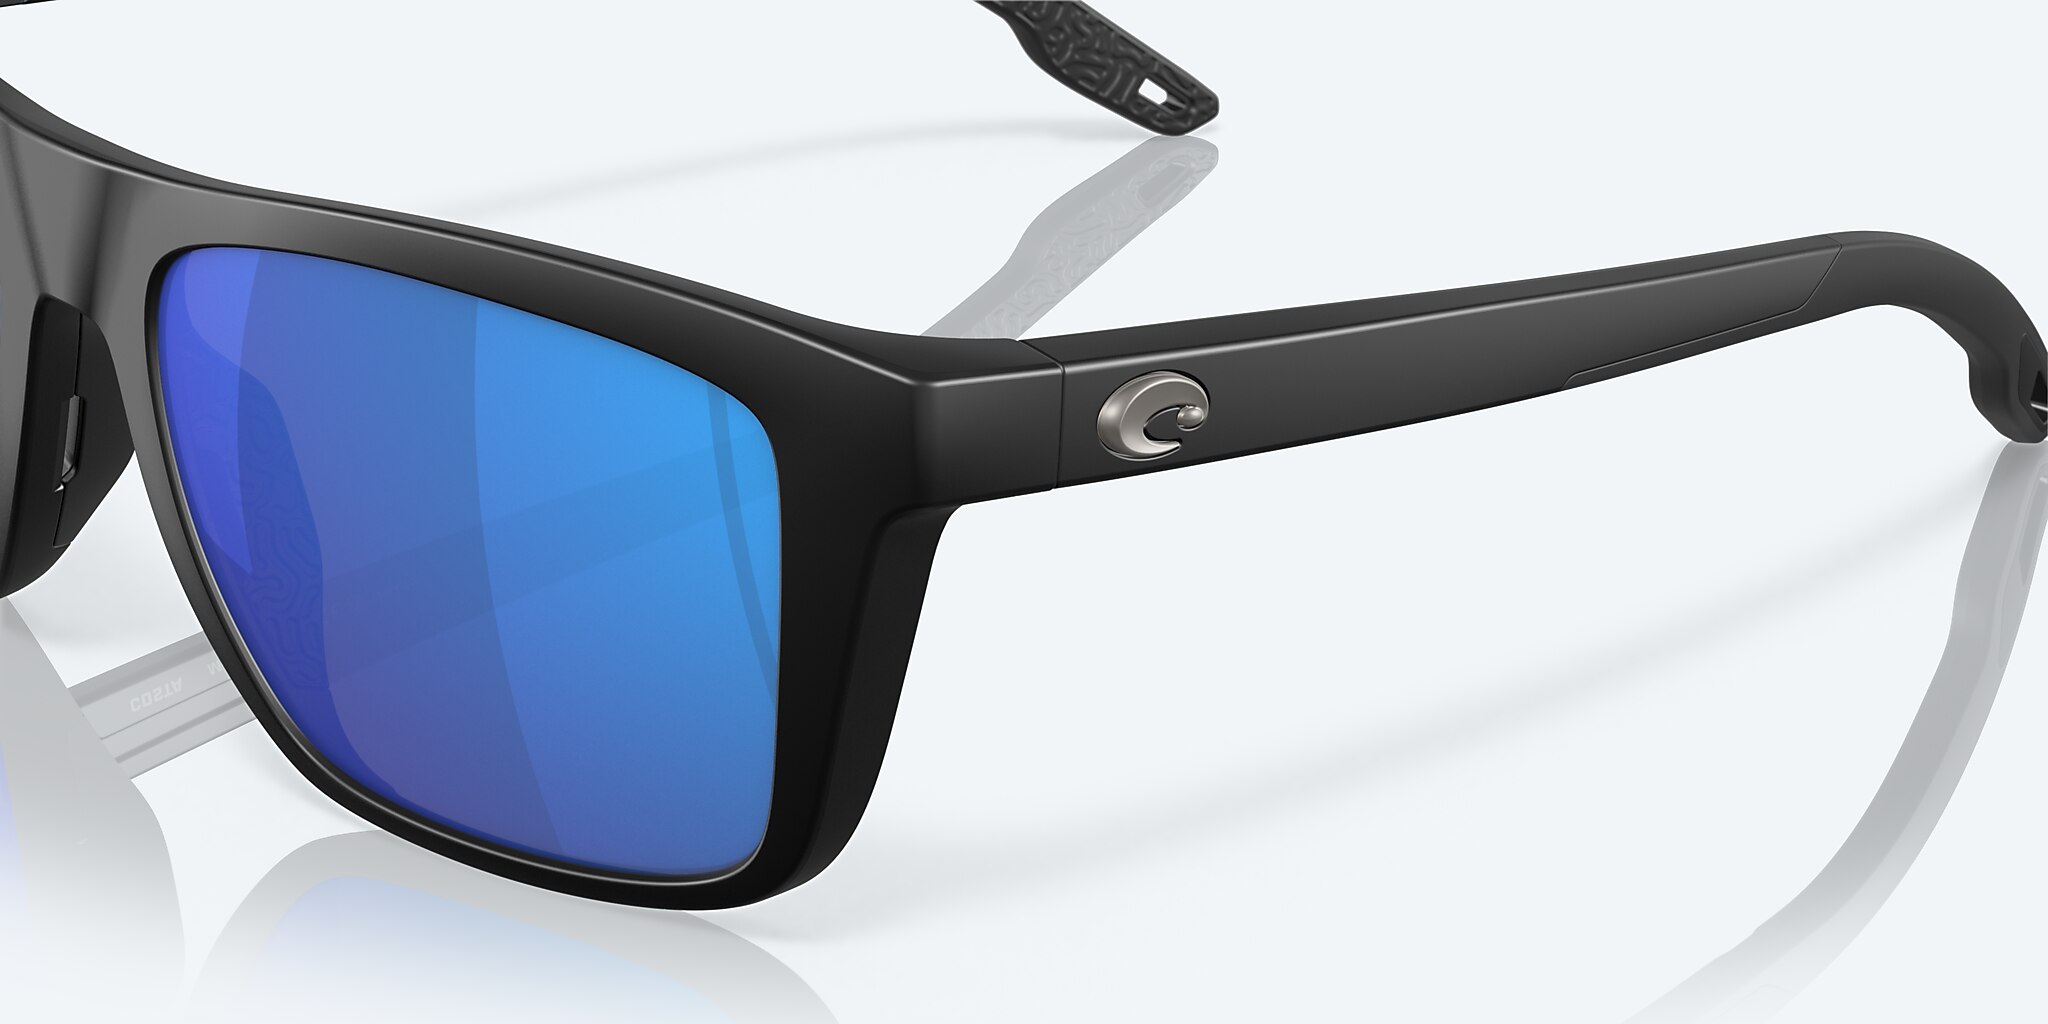 Mainsail Polarized Sunglasses in Blue Mirror | Costa Del Mar®